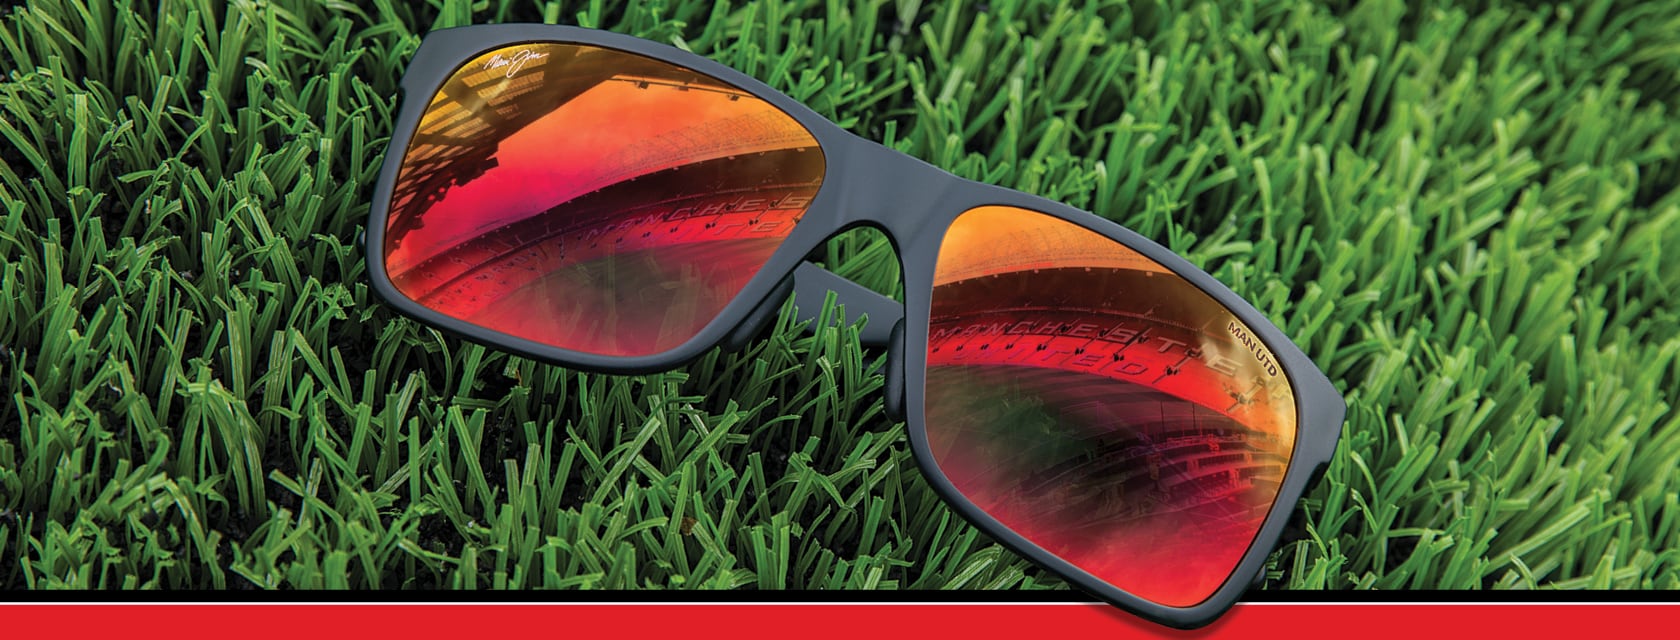 Occhiali da sole Red Sands sull'erba, stadio del Manchester United riflesso dall'obiettivo Hawaii Lava ™